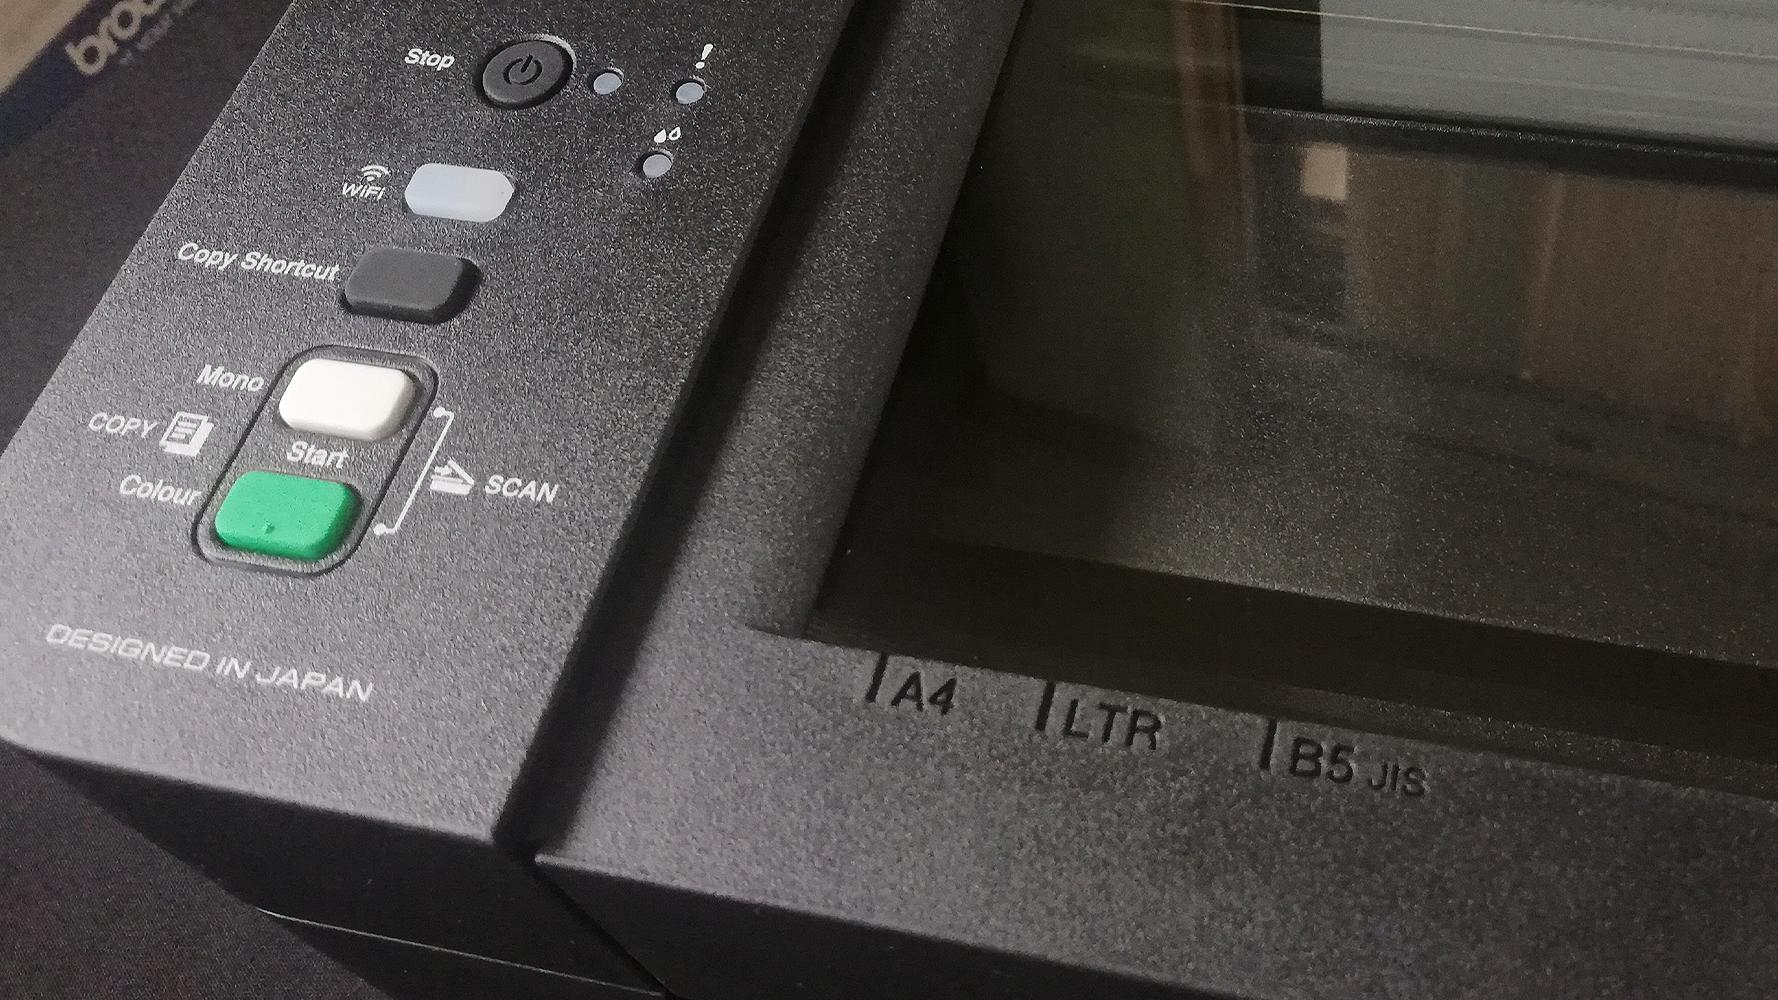 Как установить драйвер на принтер brother dcp t420w